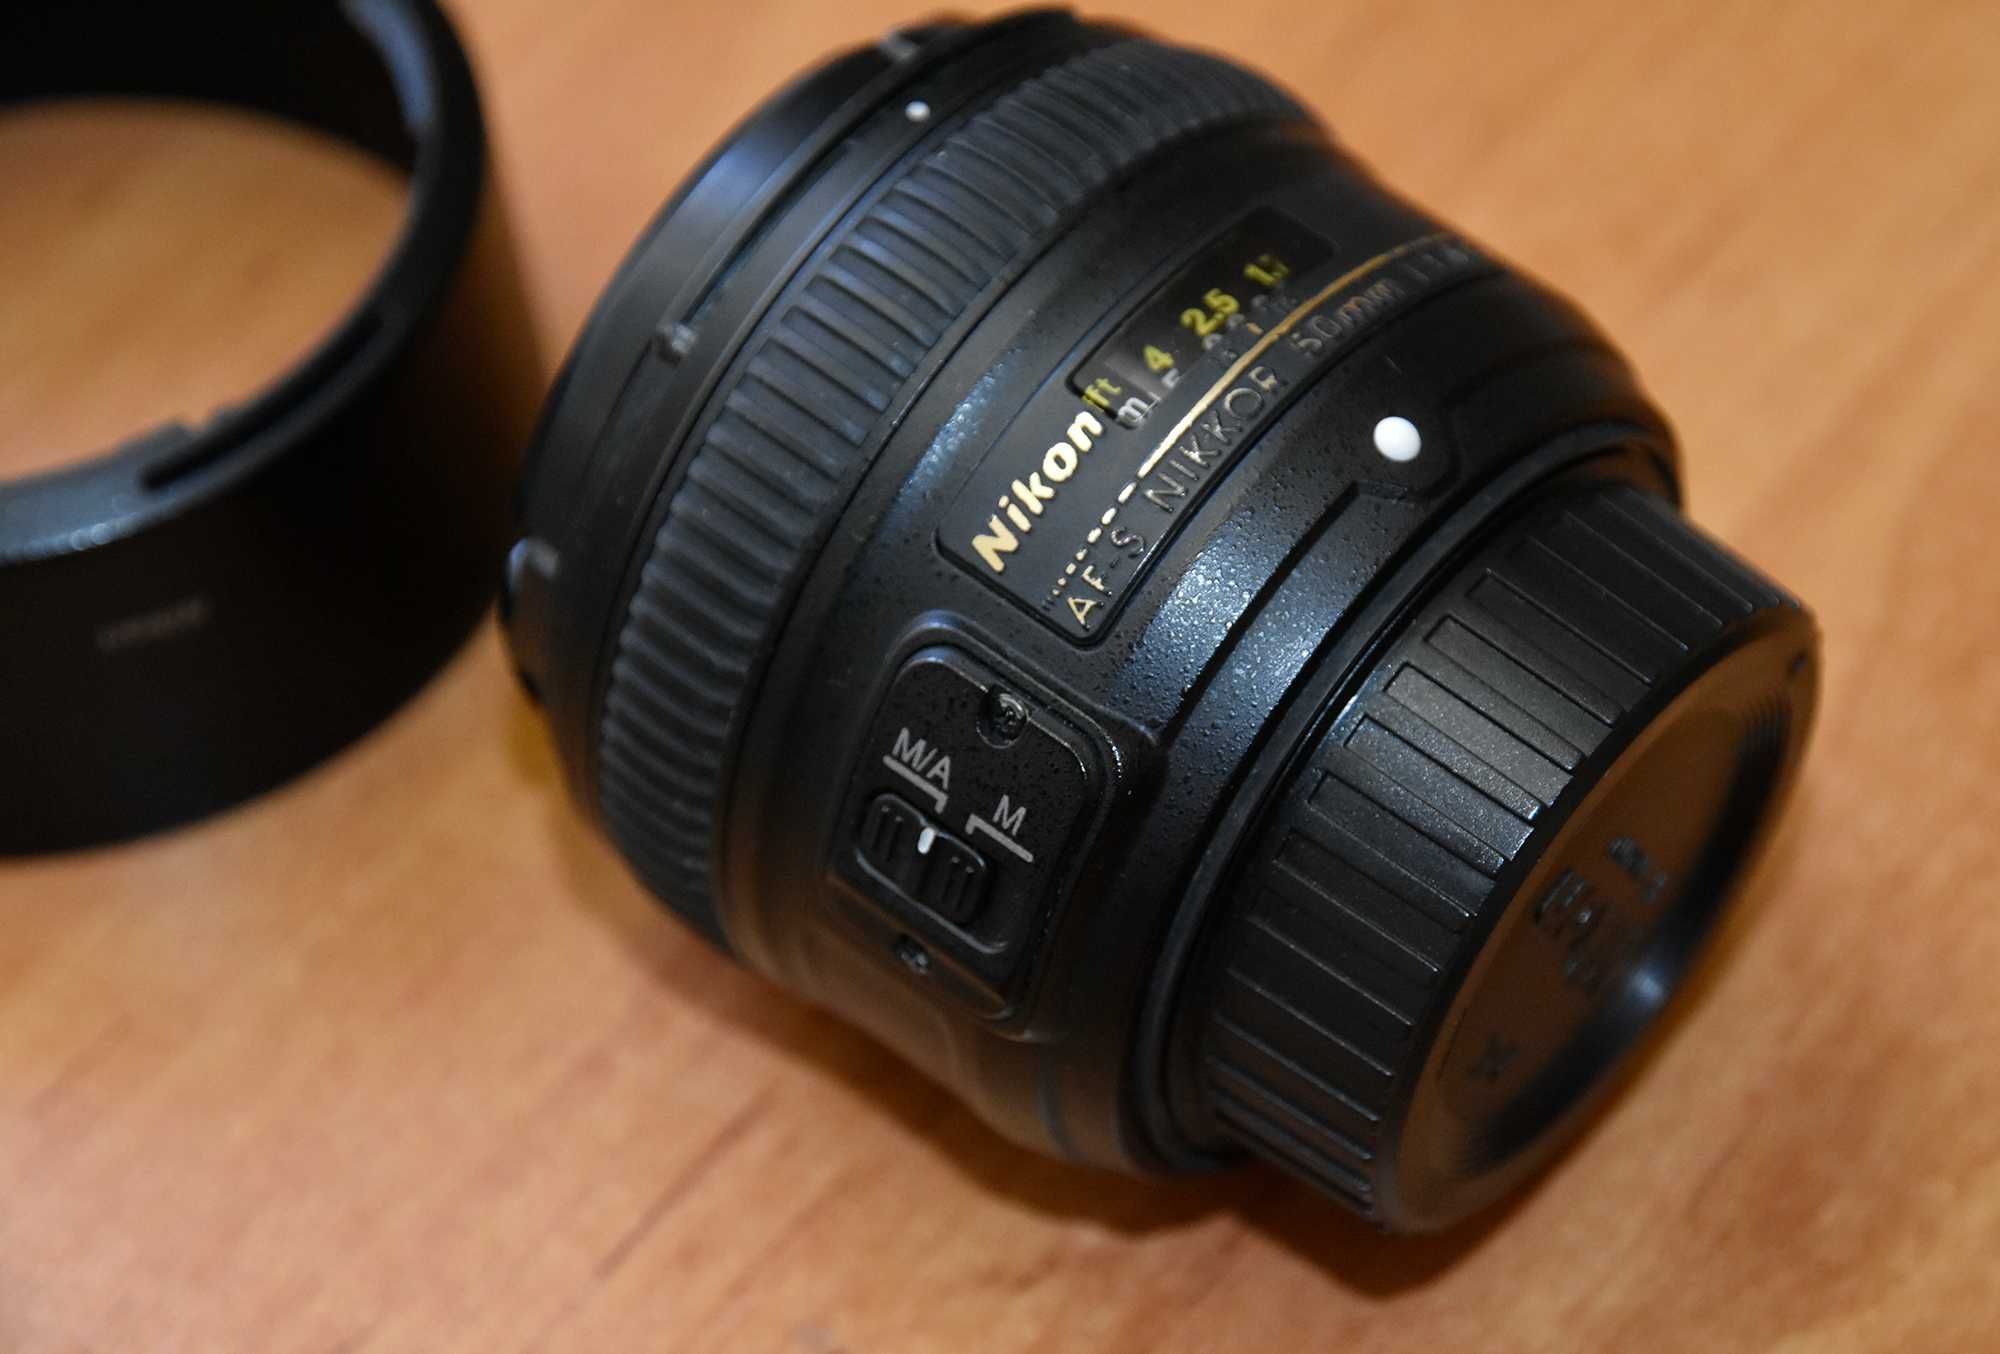 Объектив Nikon AF-S Nikkor 50mm 1:1.8G SWM Aspherical